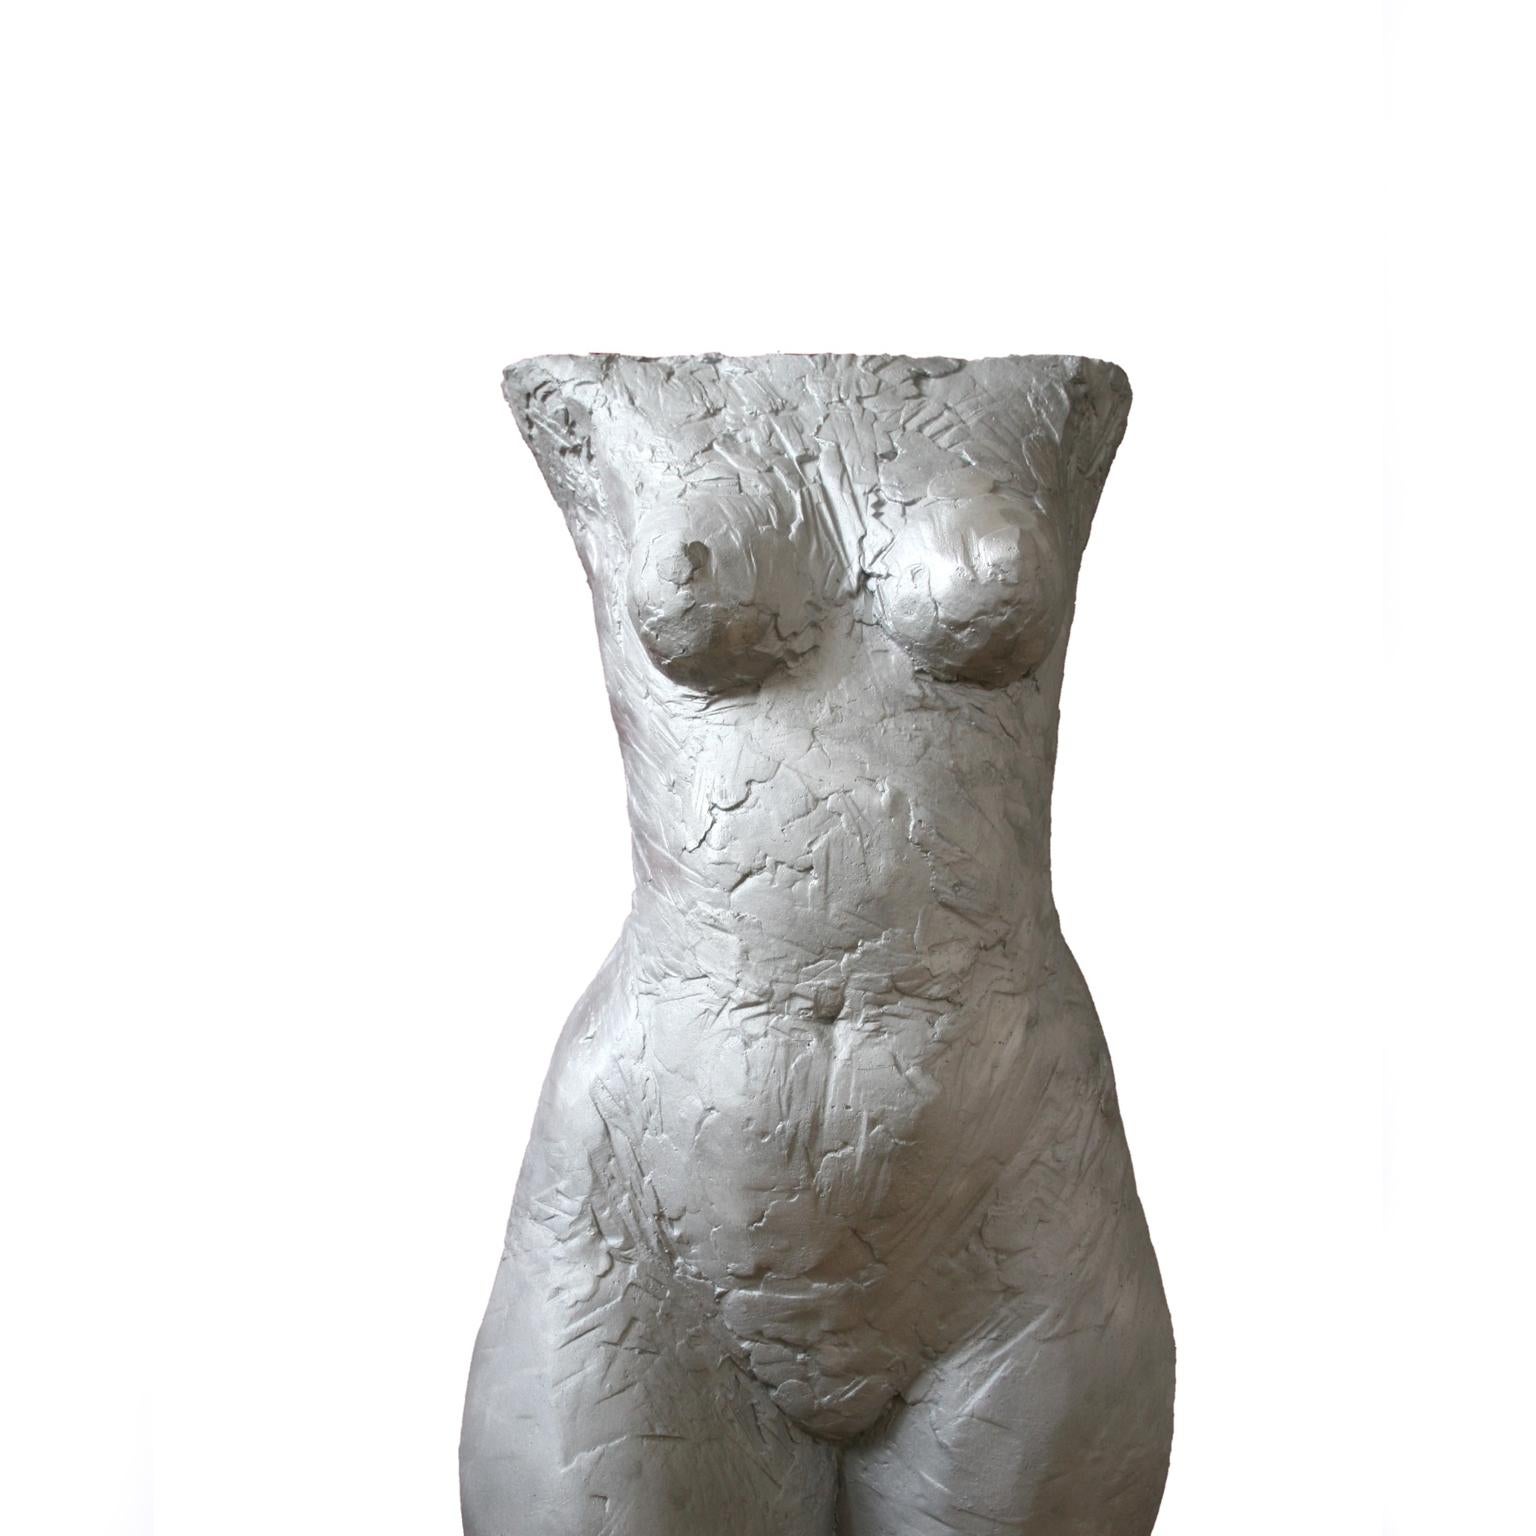 Torso - contemporary figurative sculpture of female torso as garden sculpture - Contemporary Sculpture by Susanne Kraisser